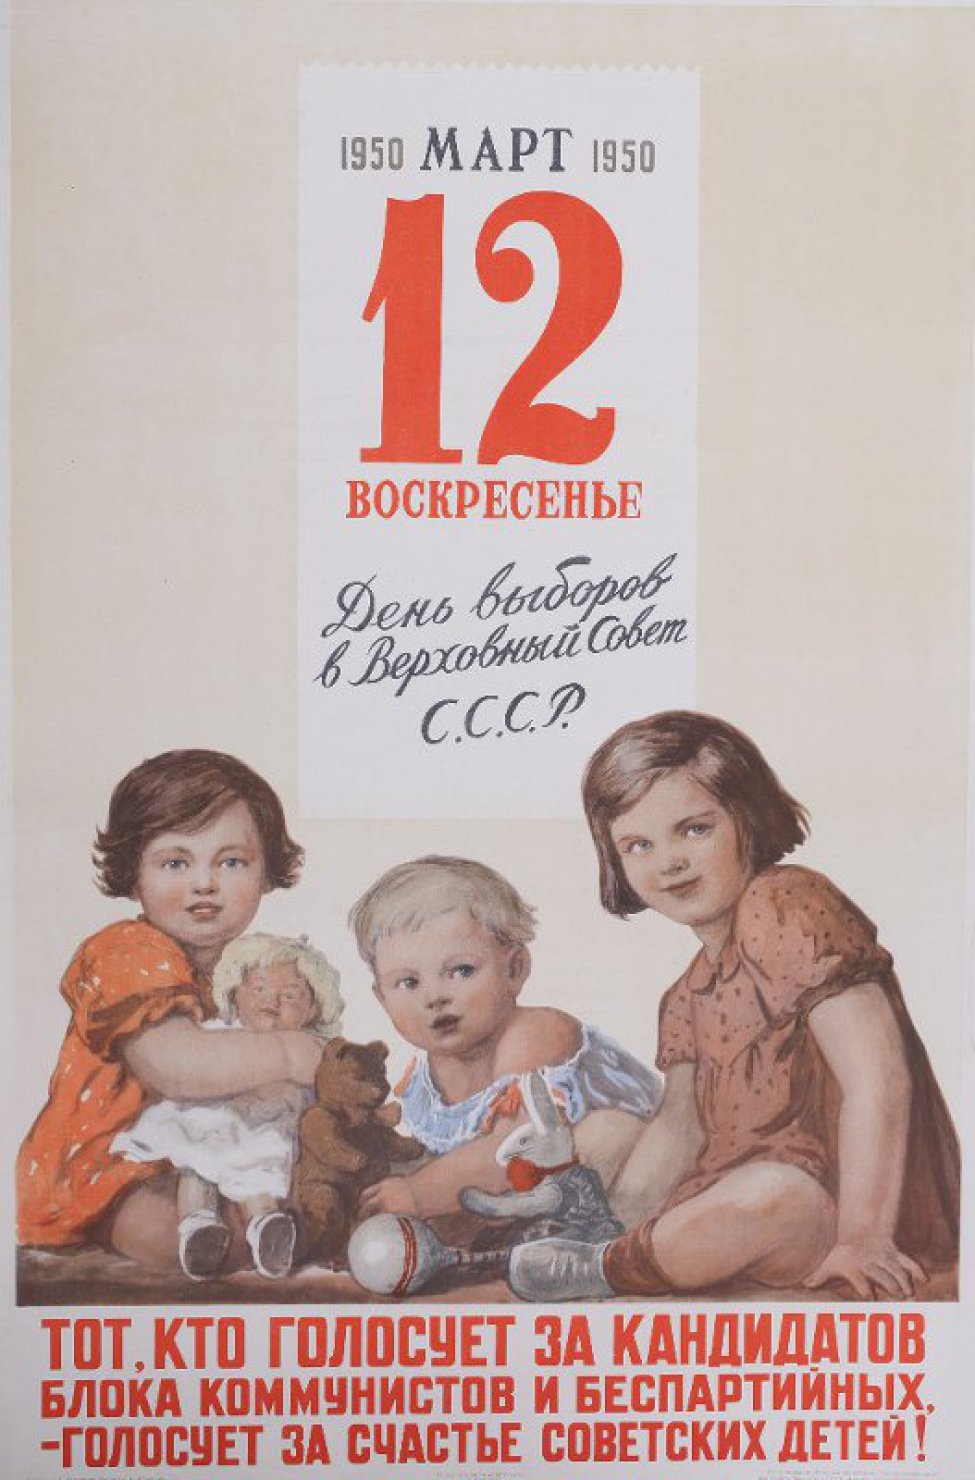 Изображен лист календаря: "12 марта 1950 г." Под ним сидят трое детей с игрушками. Слева девочка с куклой, в центре - с медведем и справа с зайцем. Ниже надпись: "Тот кто голосует за кандидатов блока коммунистов и беспартийных, голосует за счастье советских детей".